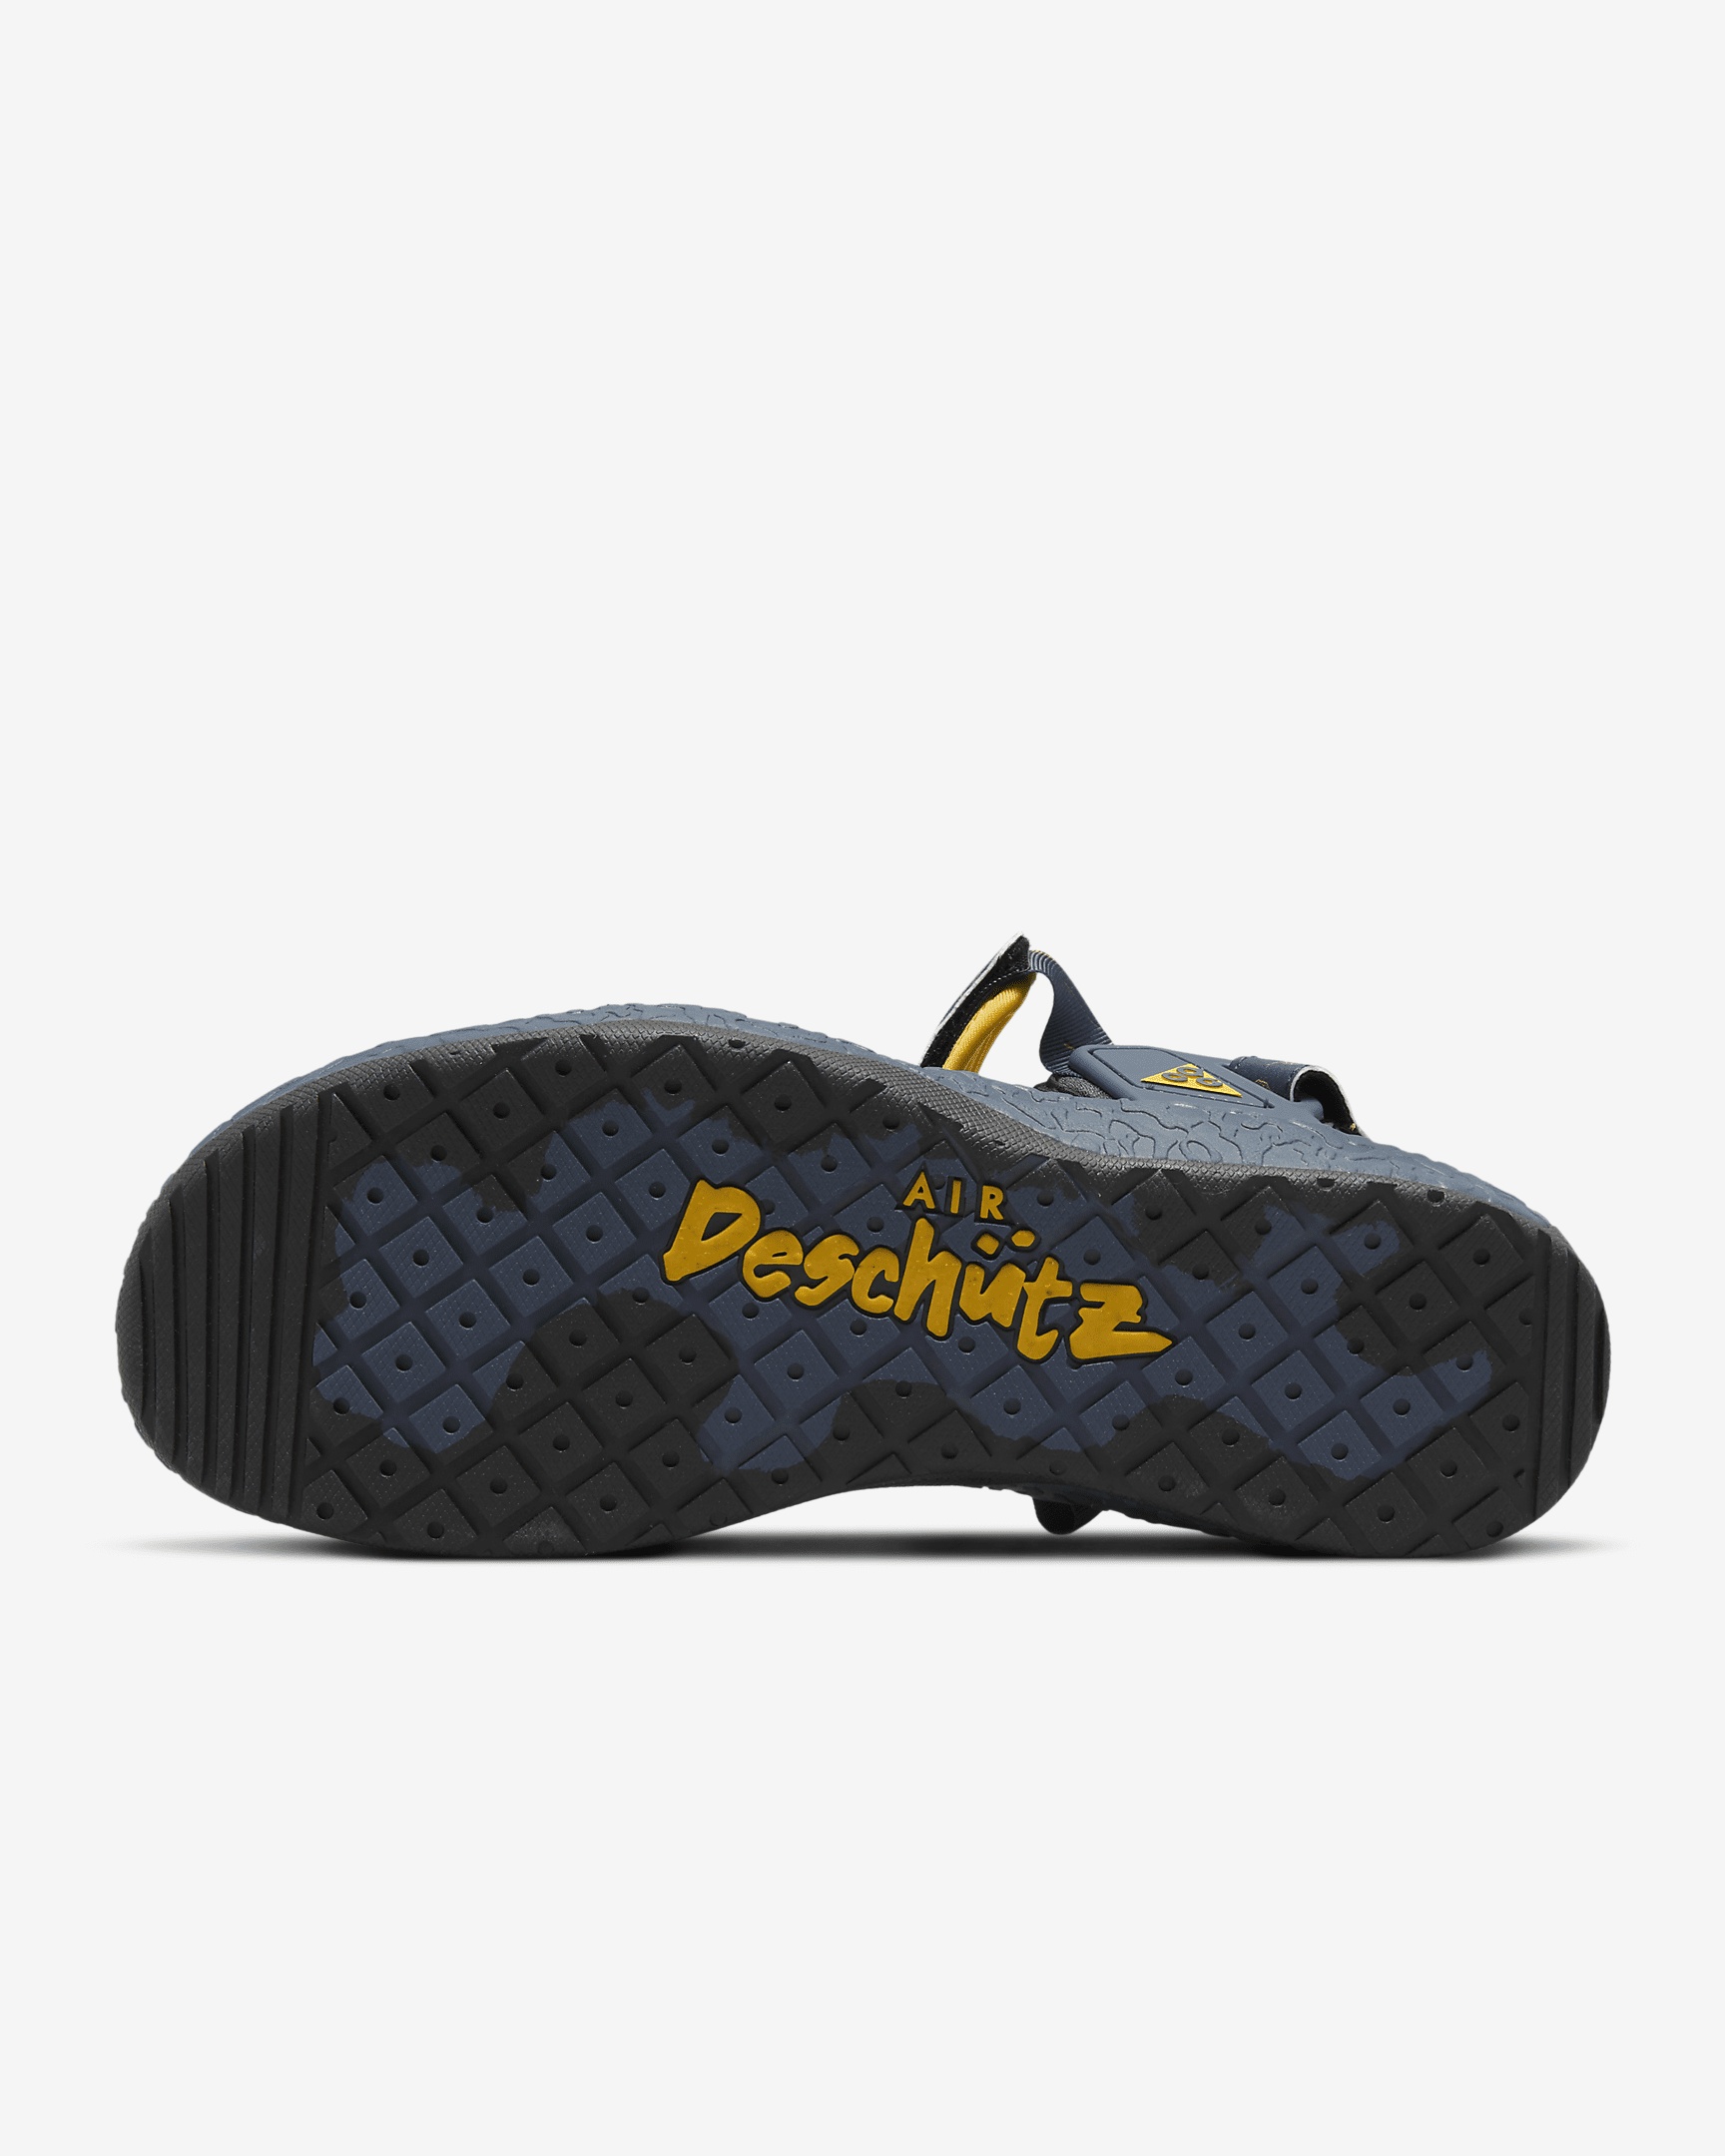 Unisex Nike ACG Air Deschutz+ SE Shoes - 2